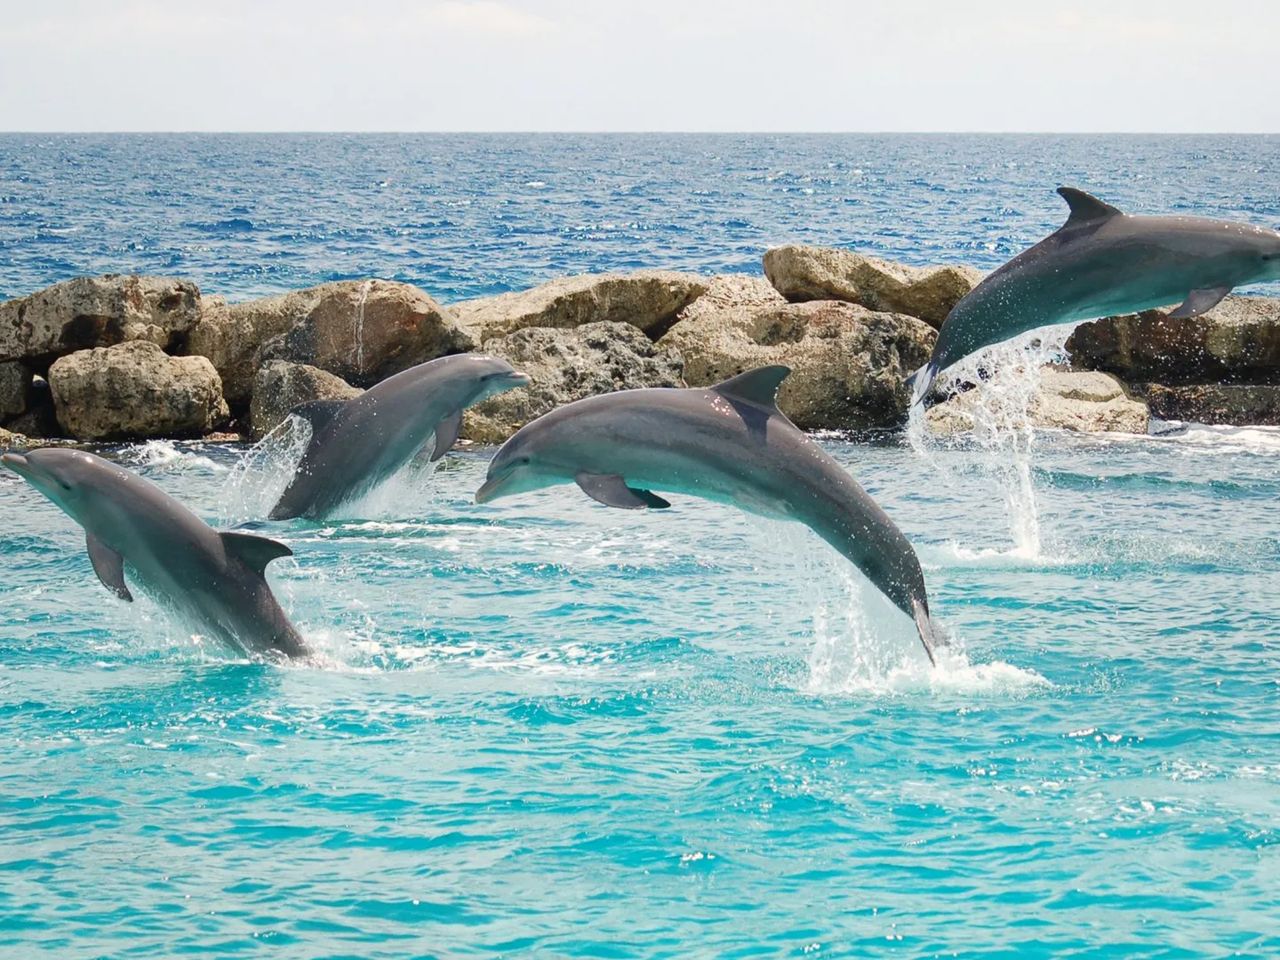 Яхт-тур на остров дельфинов  | Цена 65€, отзывы, описание экскурсии